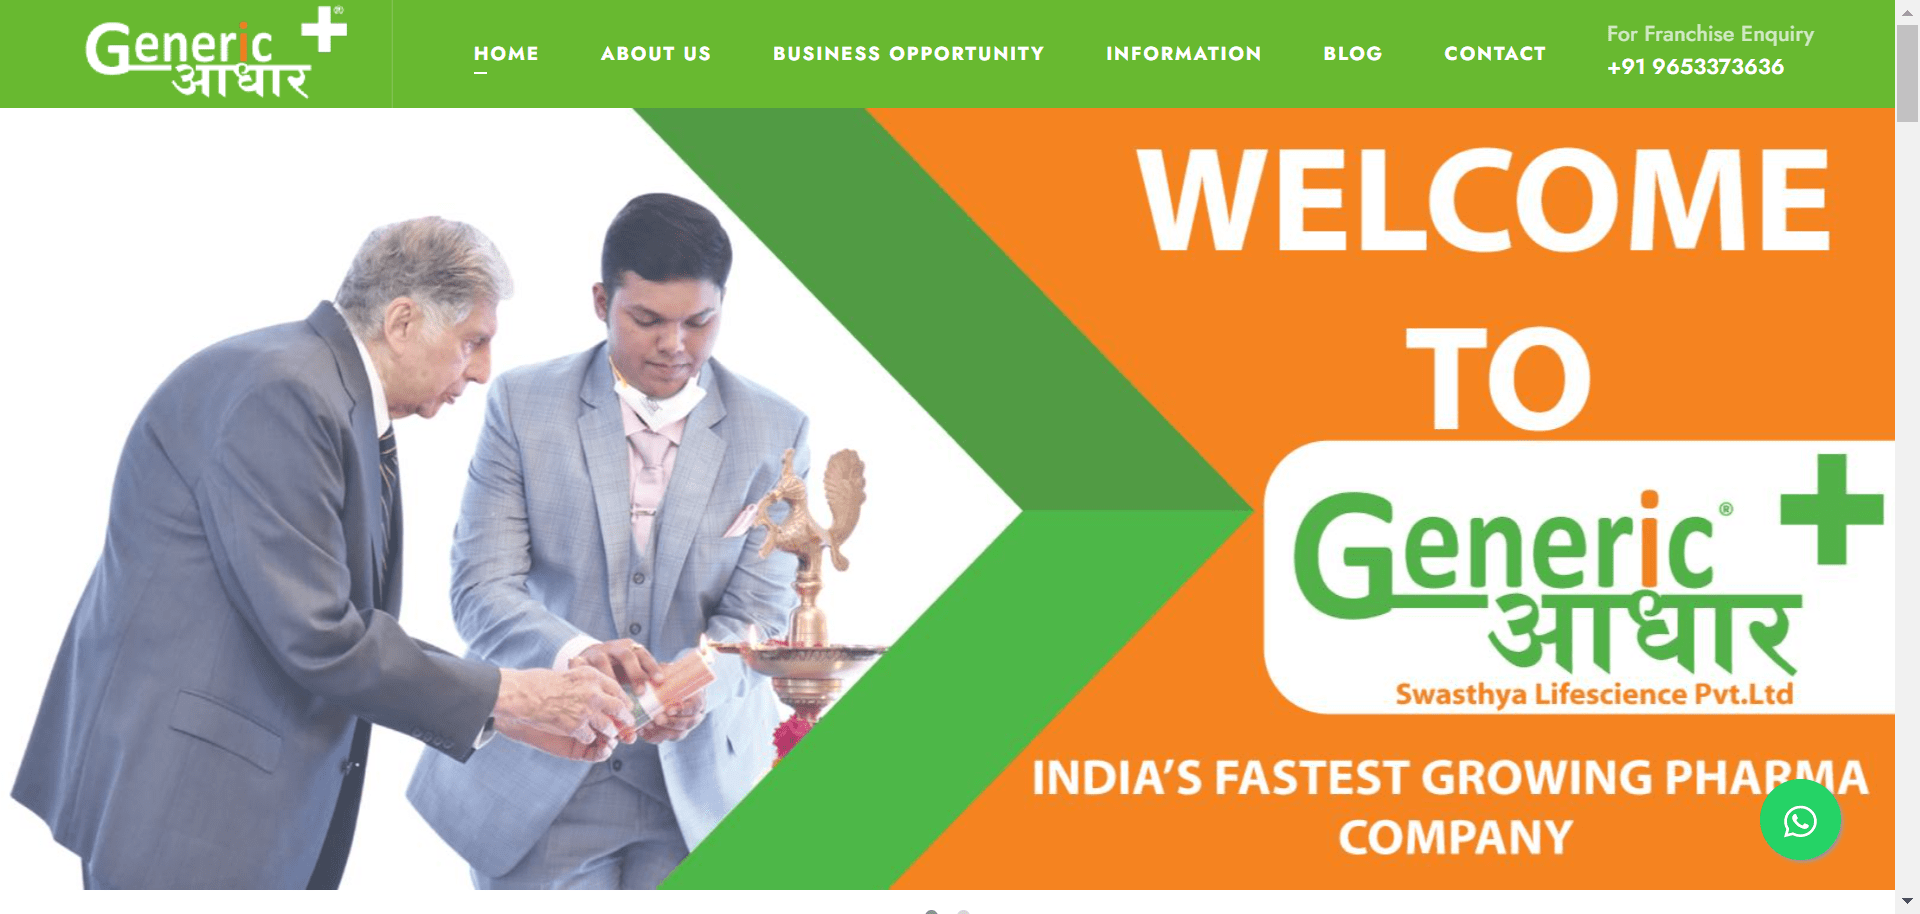 Generic Aadhaar website development company